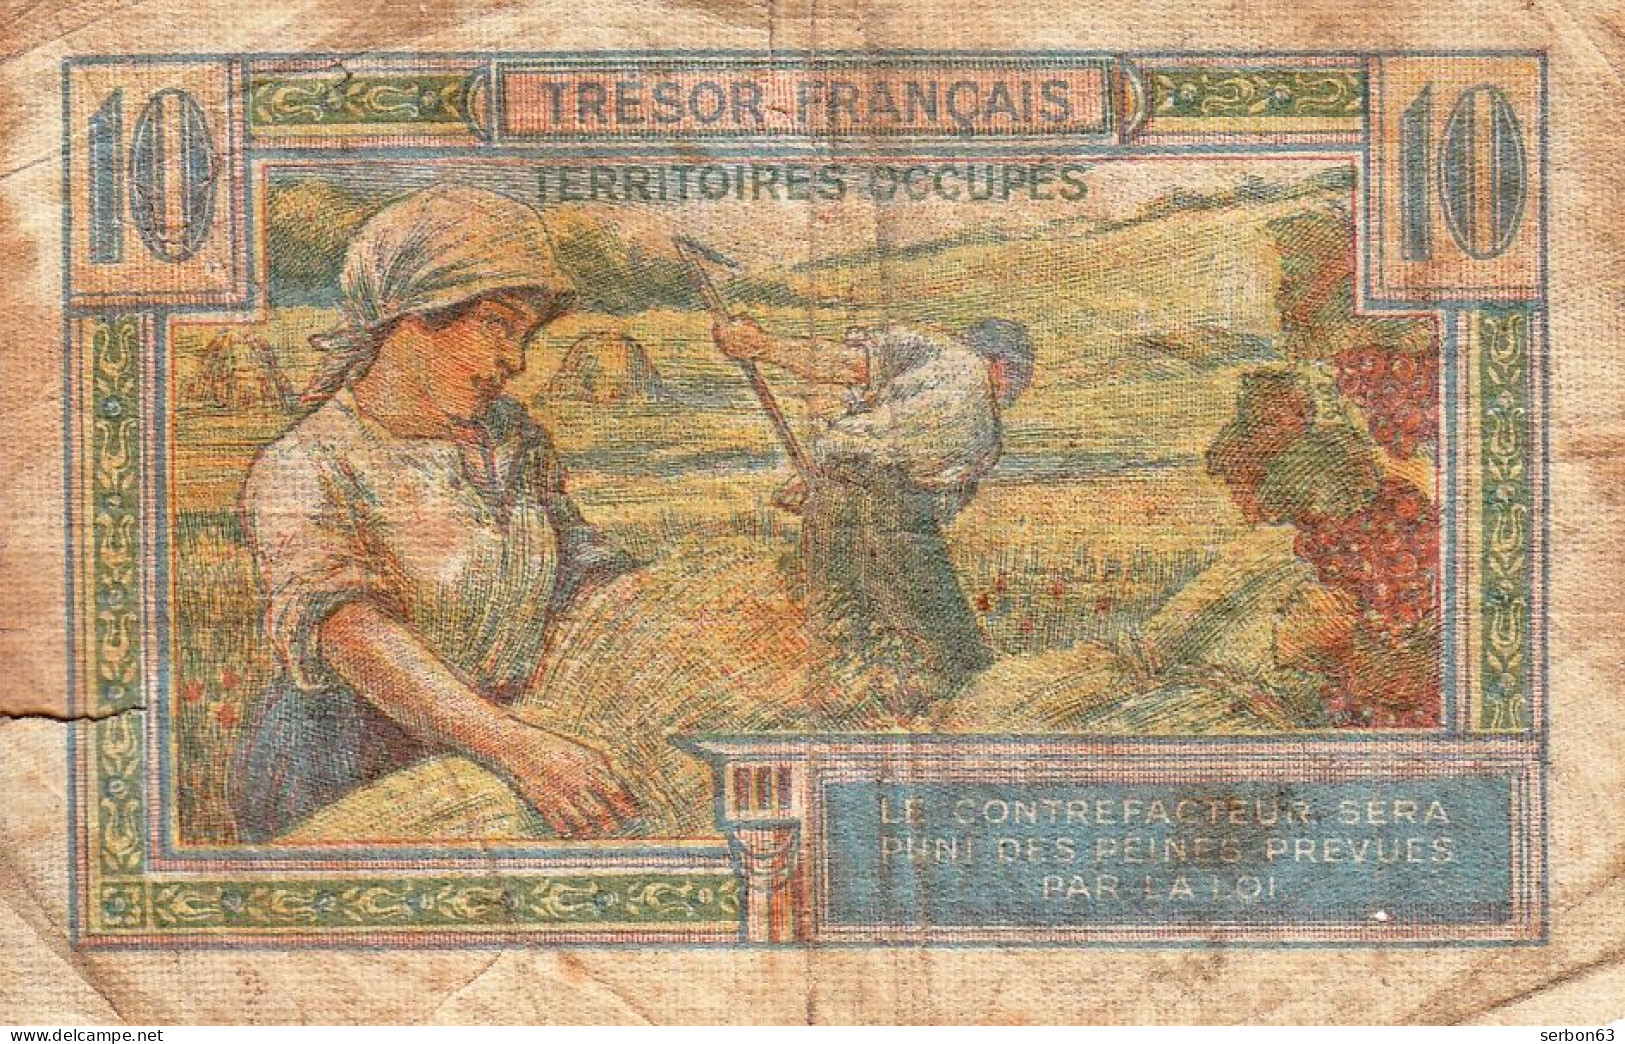 BON - BILLET - MONNAIE - TRÉSOR FRANÇAIS - 10 FRANCS - N° A 00189826 TERRITOIRES OCCUPES VENTE EN L'ETAT - 1947 French Treasury